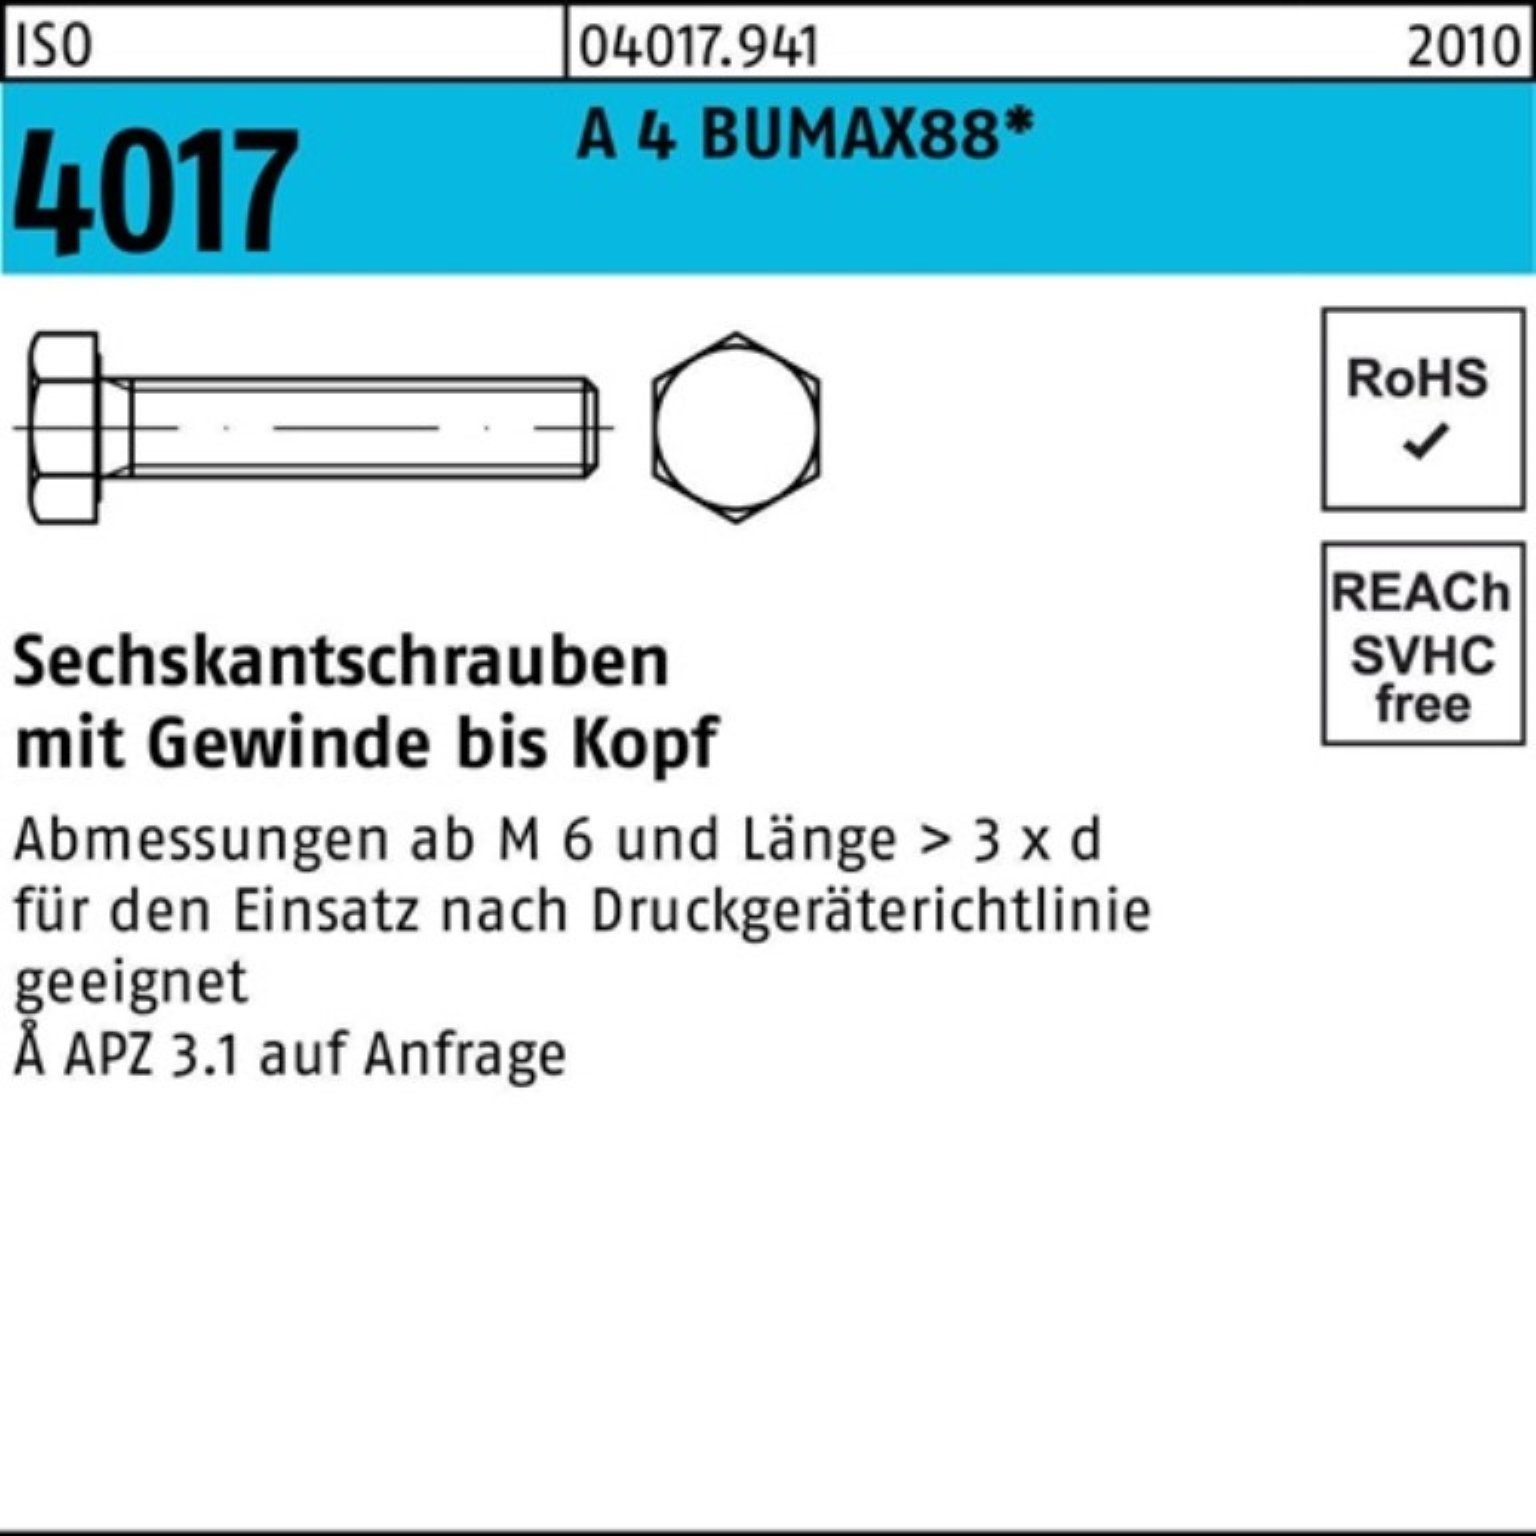 Sechskantschraube VG BUMAX88 M12x 4017 Sechskantschraube A Stück 100er Pack 40 ISO 25 4 Bufab